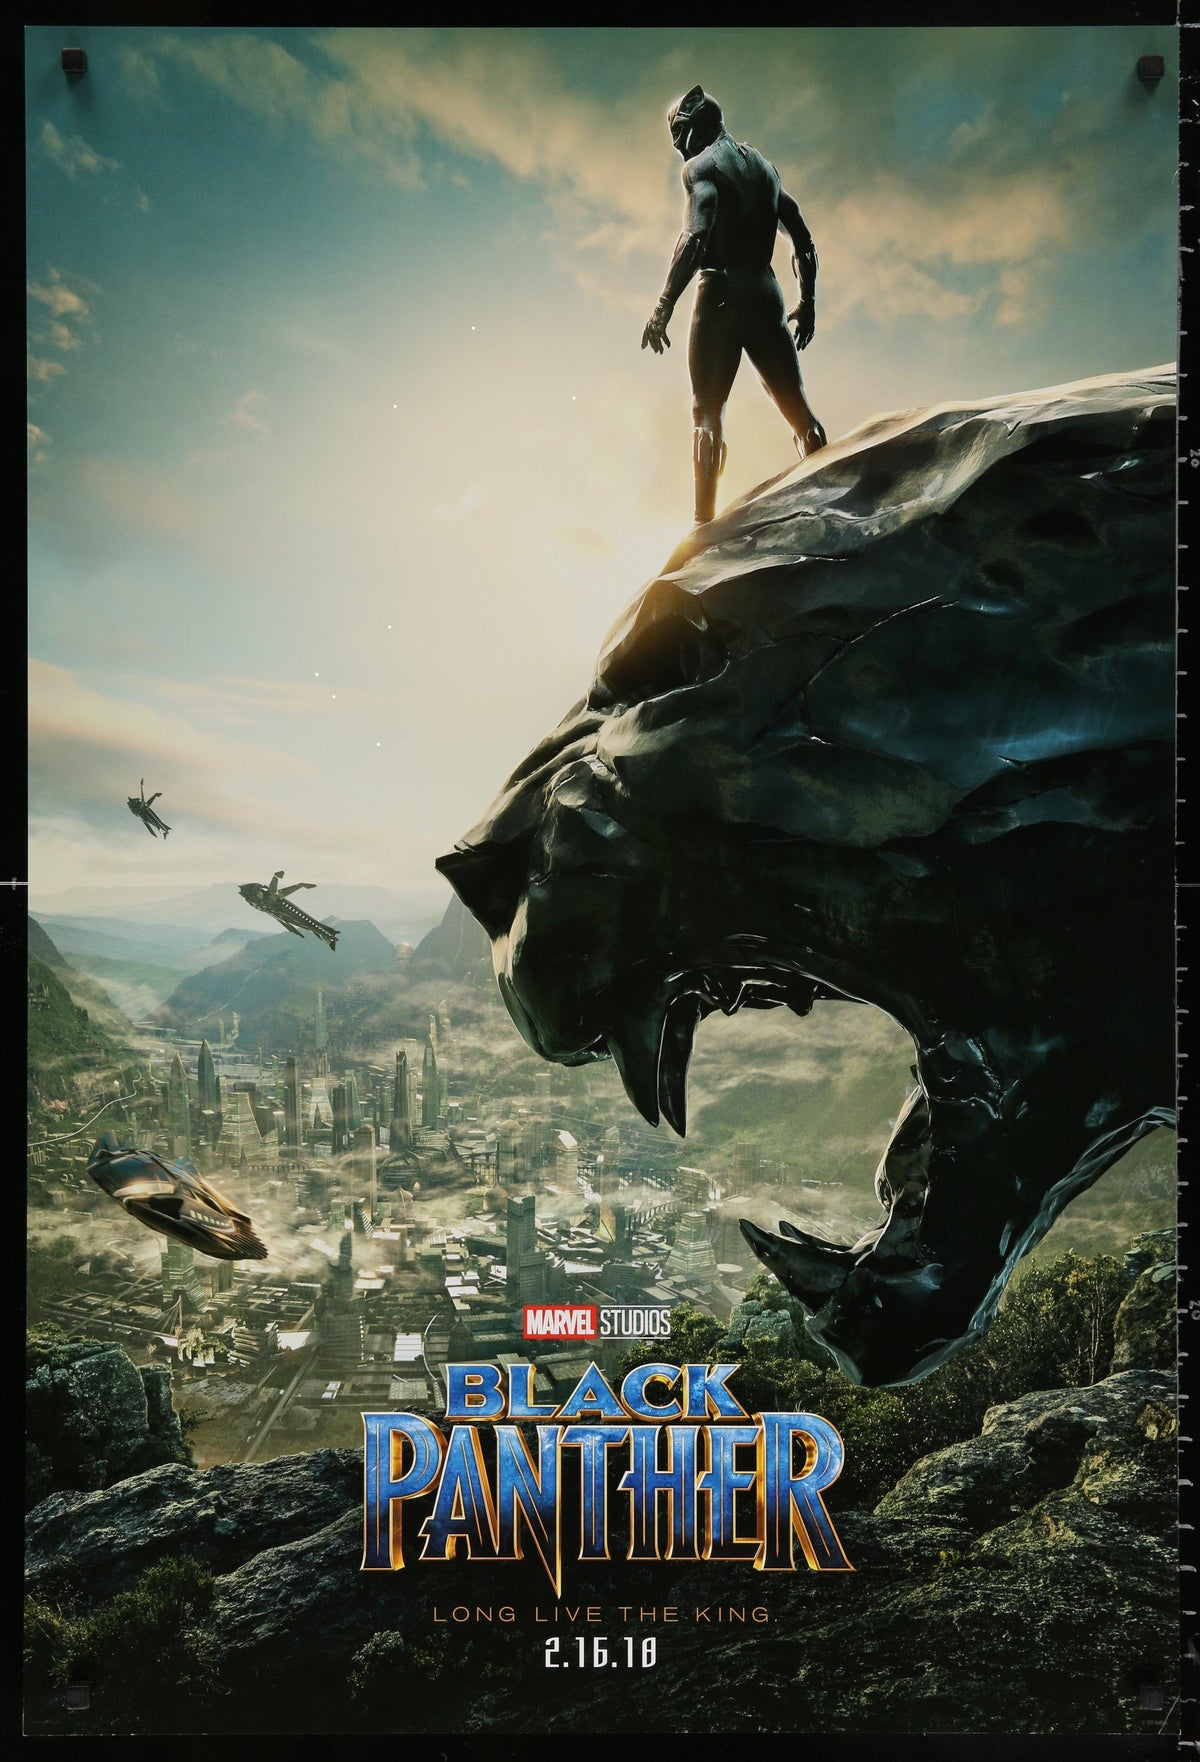 Black Panther 1 Sheet (27x41) Original Vintage Movie Poster